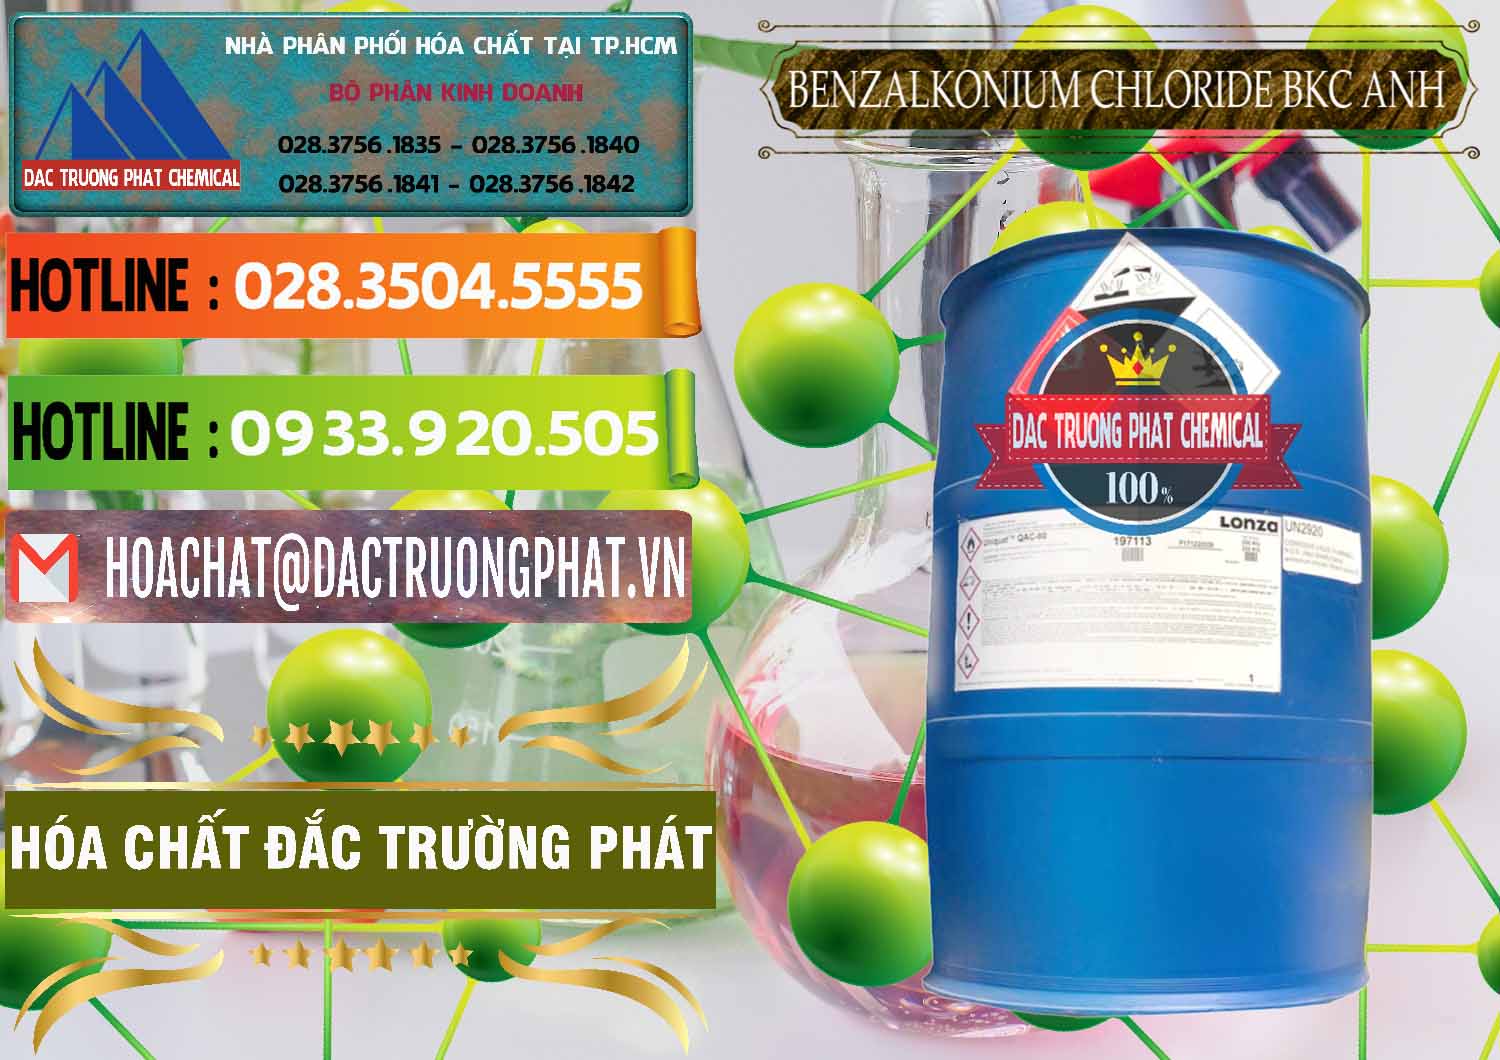 Nơi chuyên kinh doanh và bán BKC - Benzalkonium Chloride 80% Anh Quốc Uk Kingdoms - 0457 - Nhà phân phối - cung cấp hóa chất tại TP.HCM - cungcaphoachat.com.vn